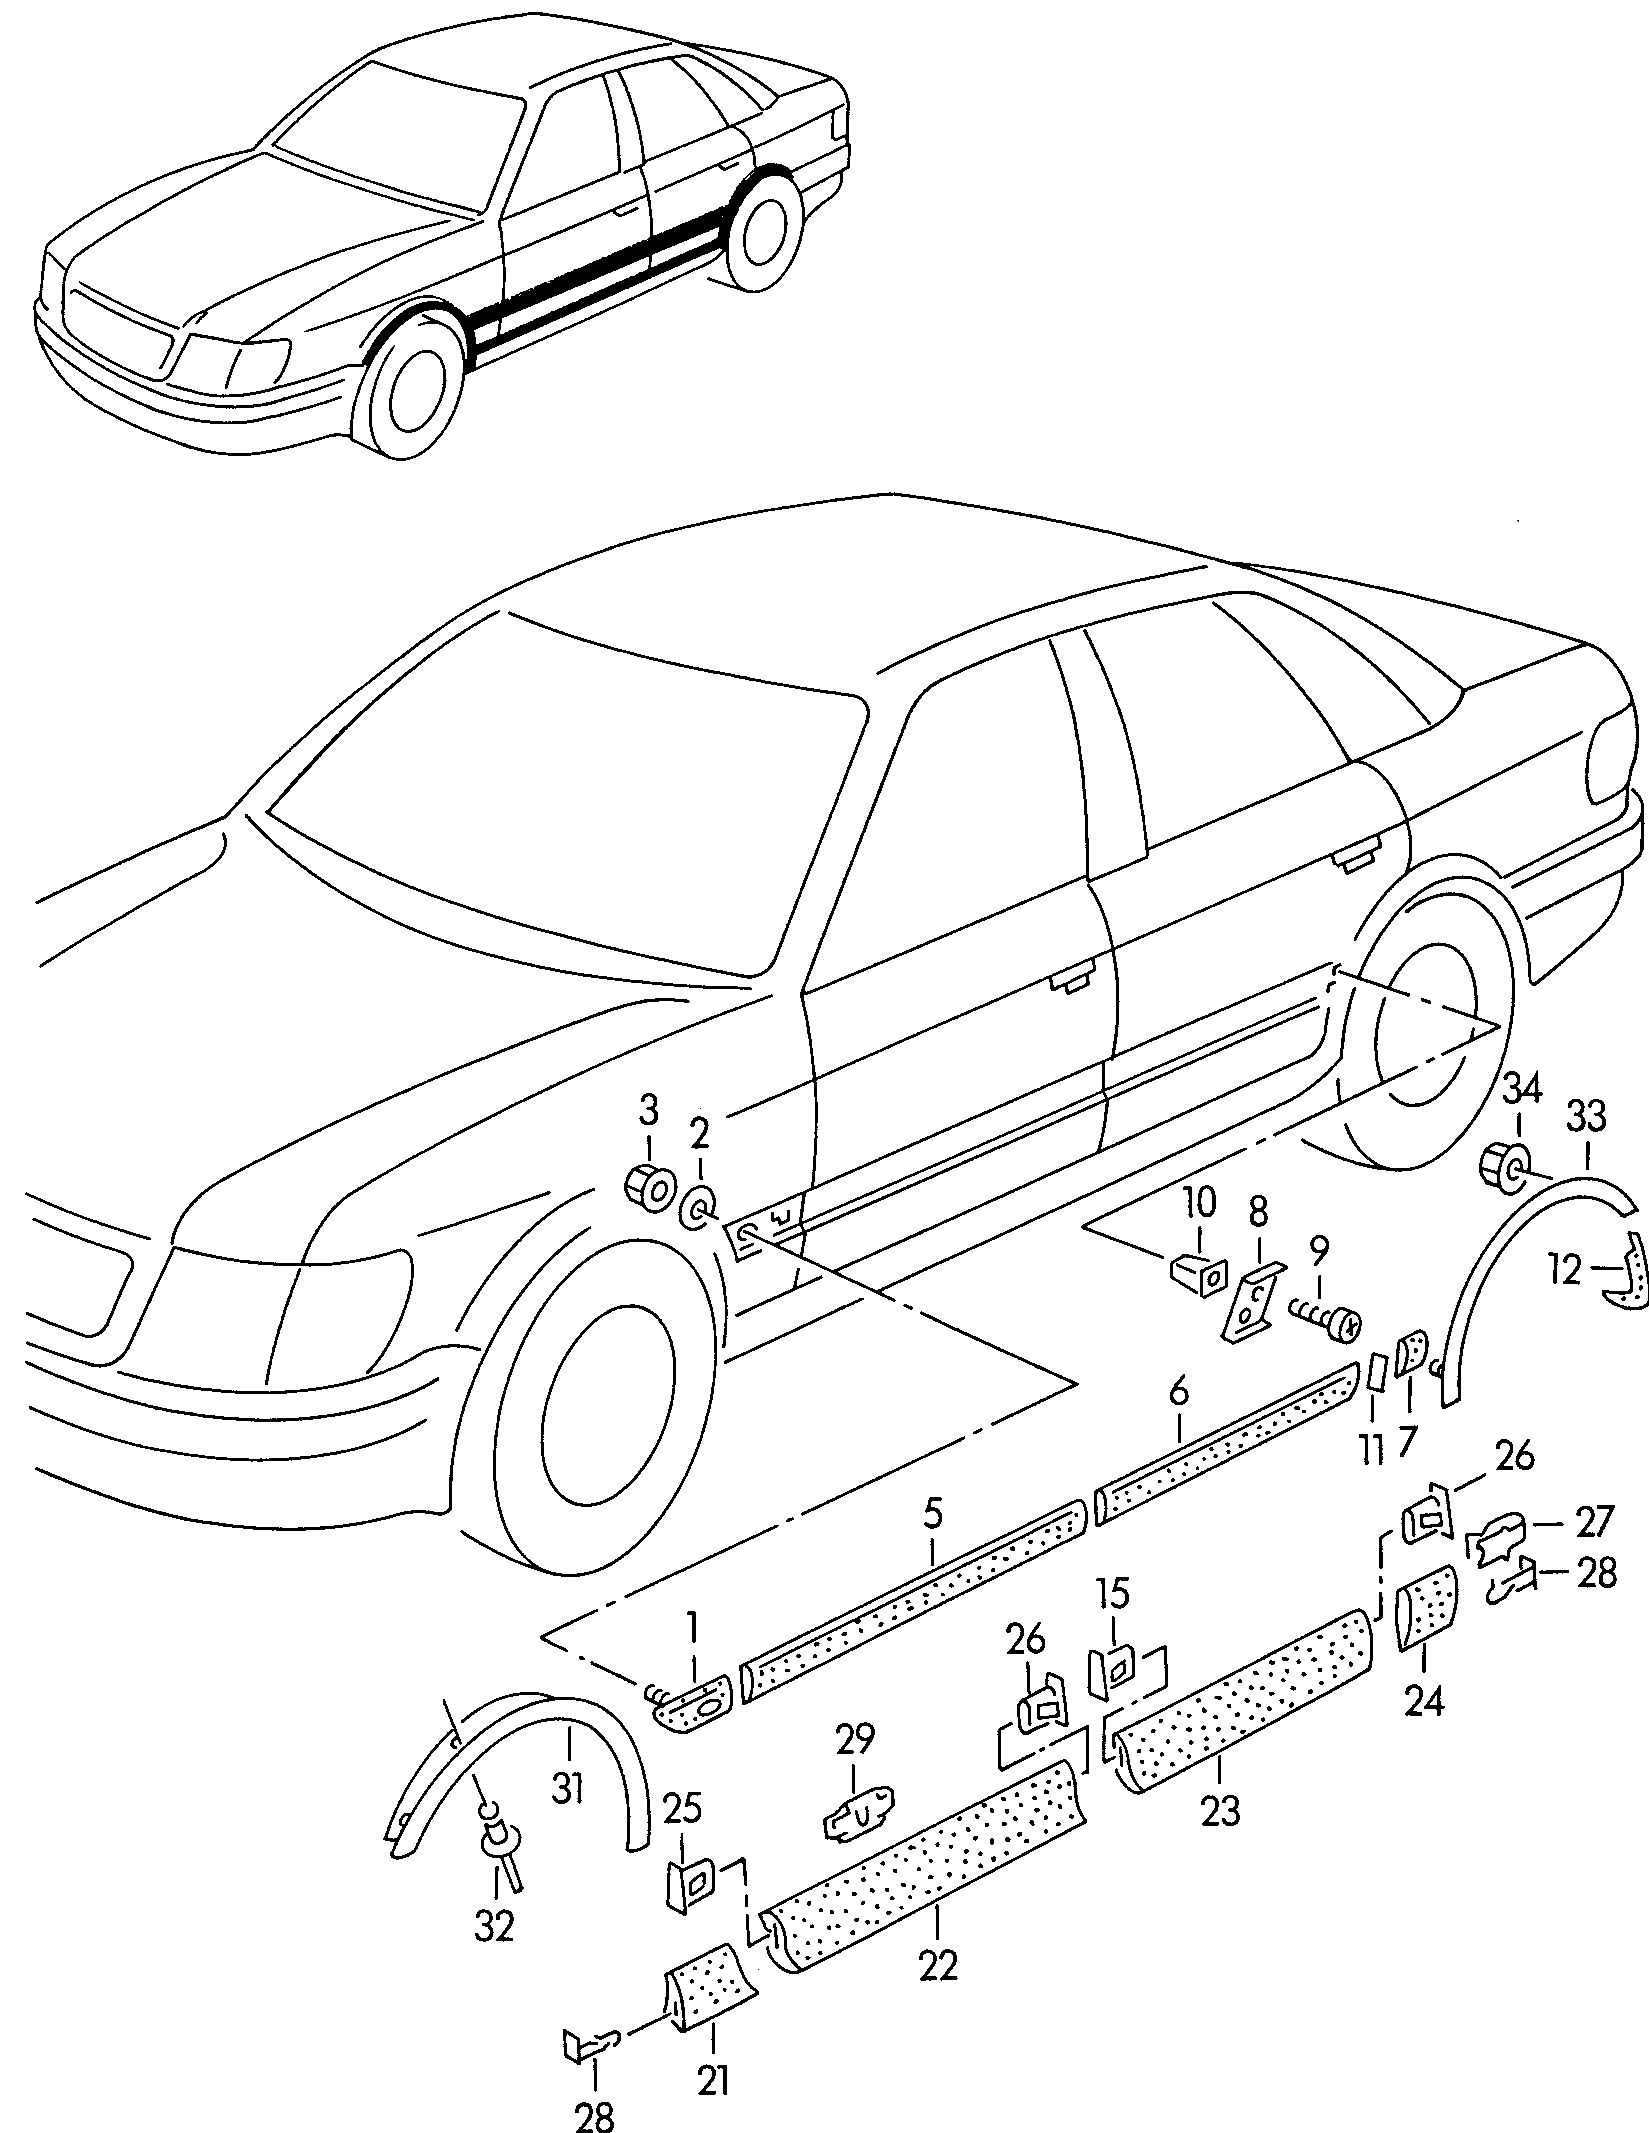 listwy ozdobne i nakladki na
blotnik, drzwi i pos... - Audi 80/90/Avant quattro(A80Q)  